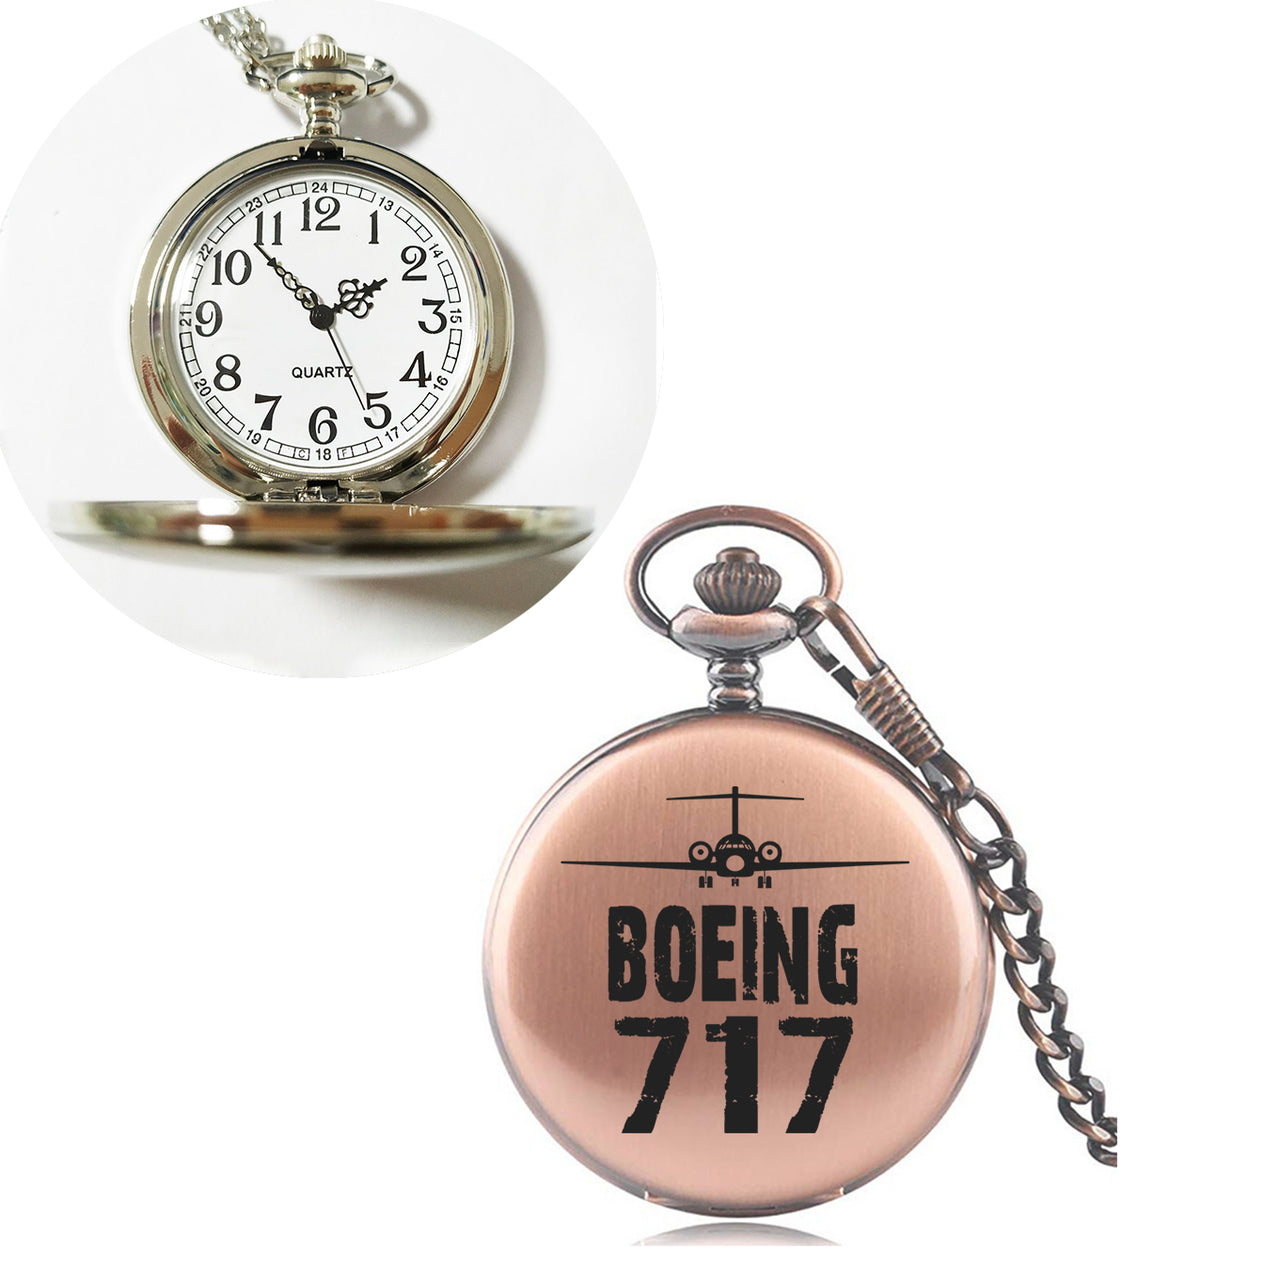 Boeing 717 & Plane Designed Pocket Watches